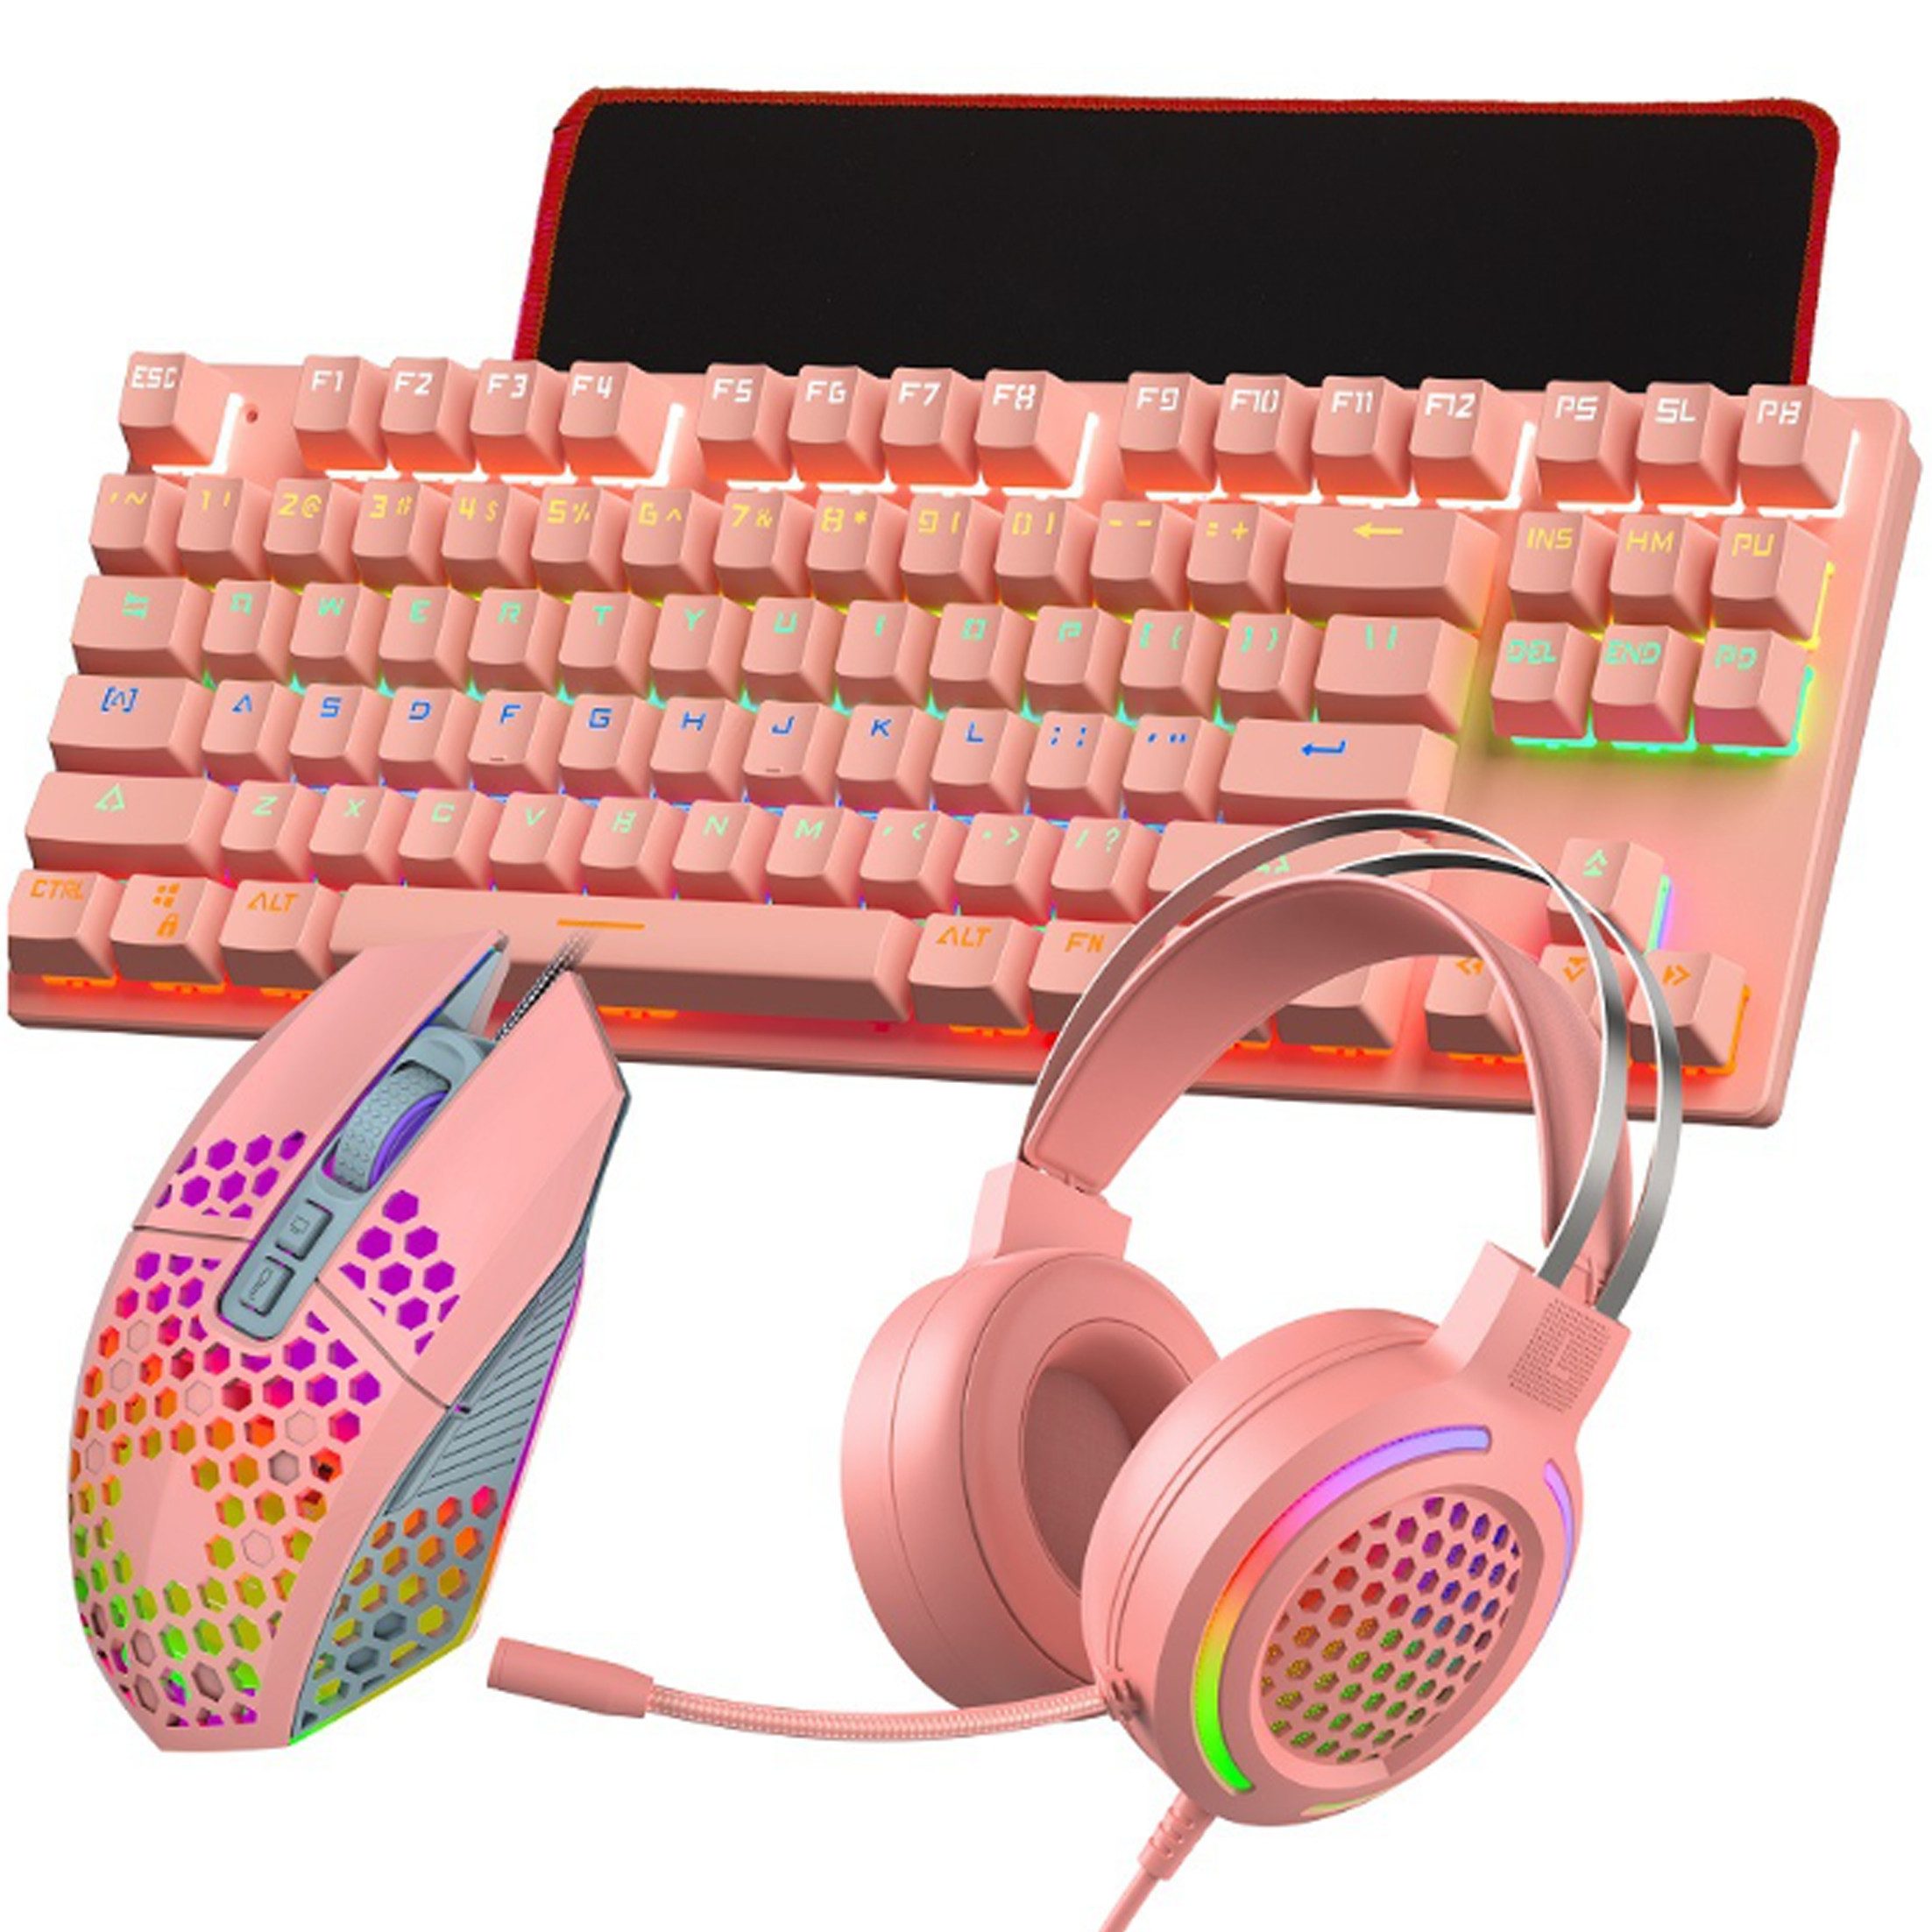 Tadow Verkabelte mechanische Gaming-Tastatur 4-in-1,87 Tasten,Lichteffekte Tastatur- und Headset-Set